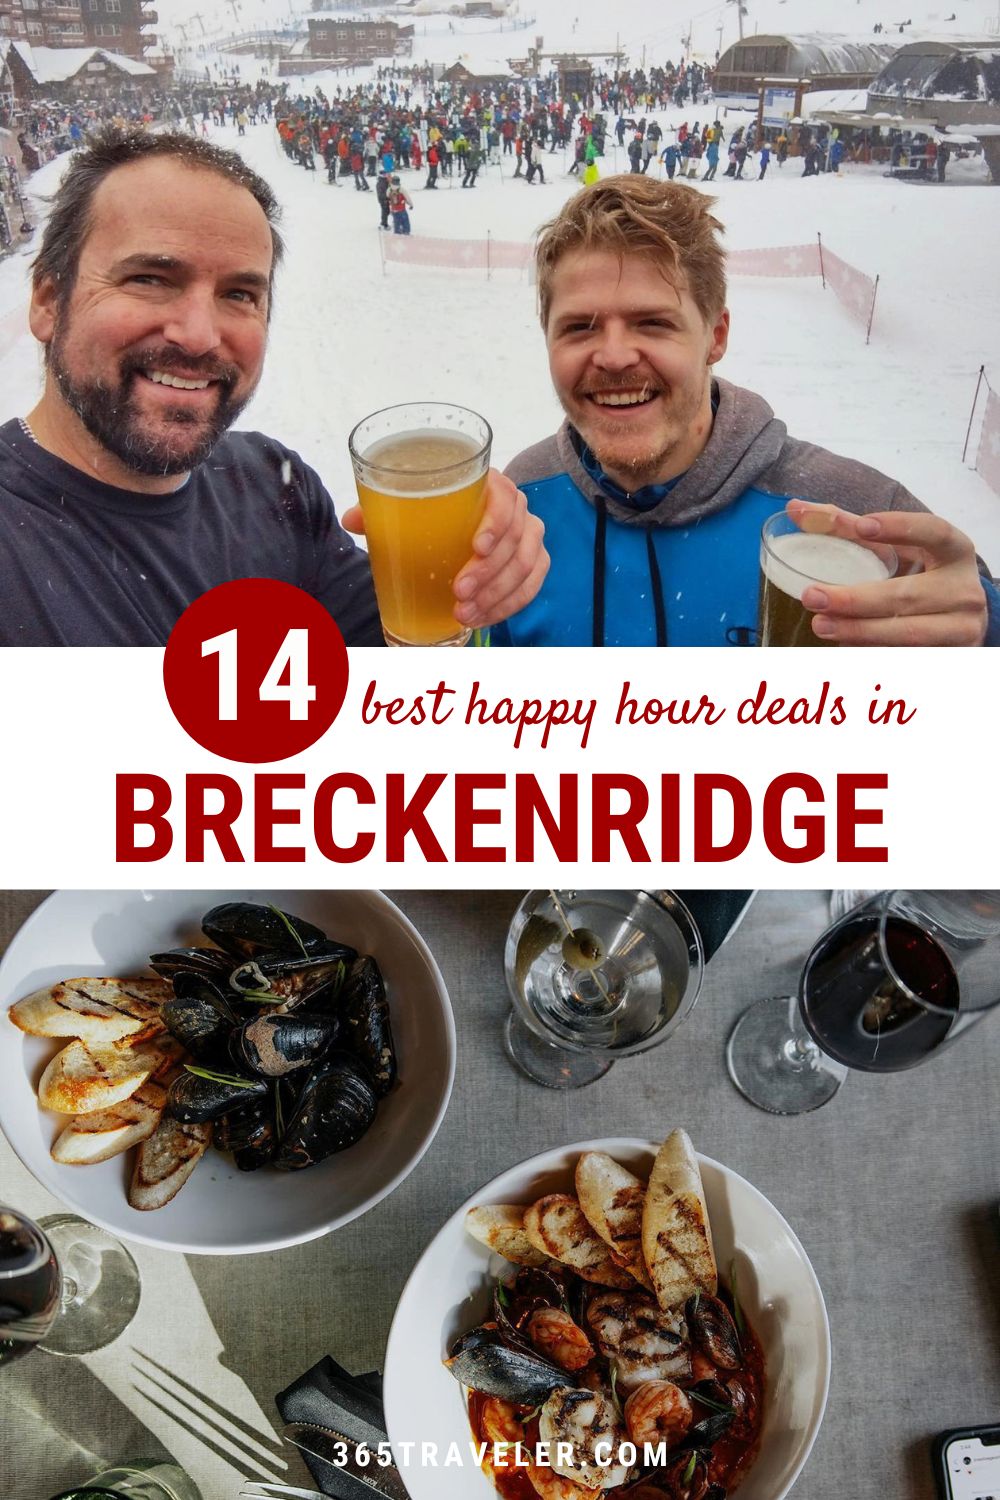 14 BEST BRECKENRIDGE HAPPY HOUR DEALS FOR FAMILIES (+ FAV RESTAURANTS)